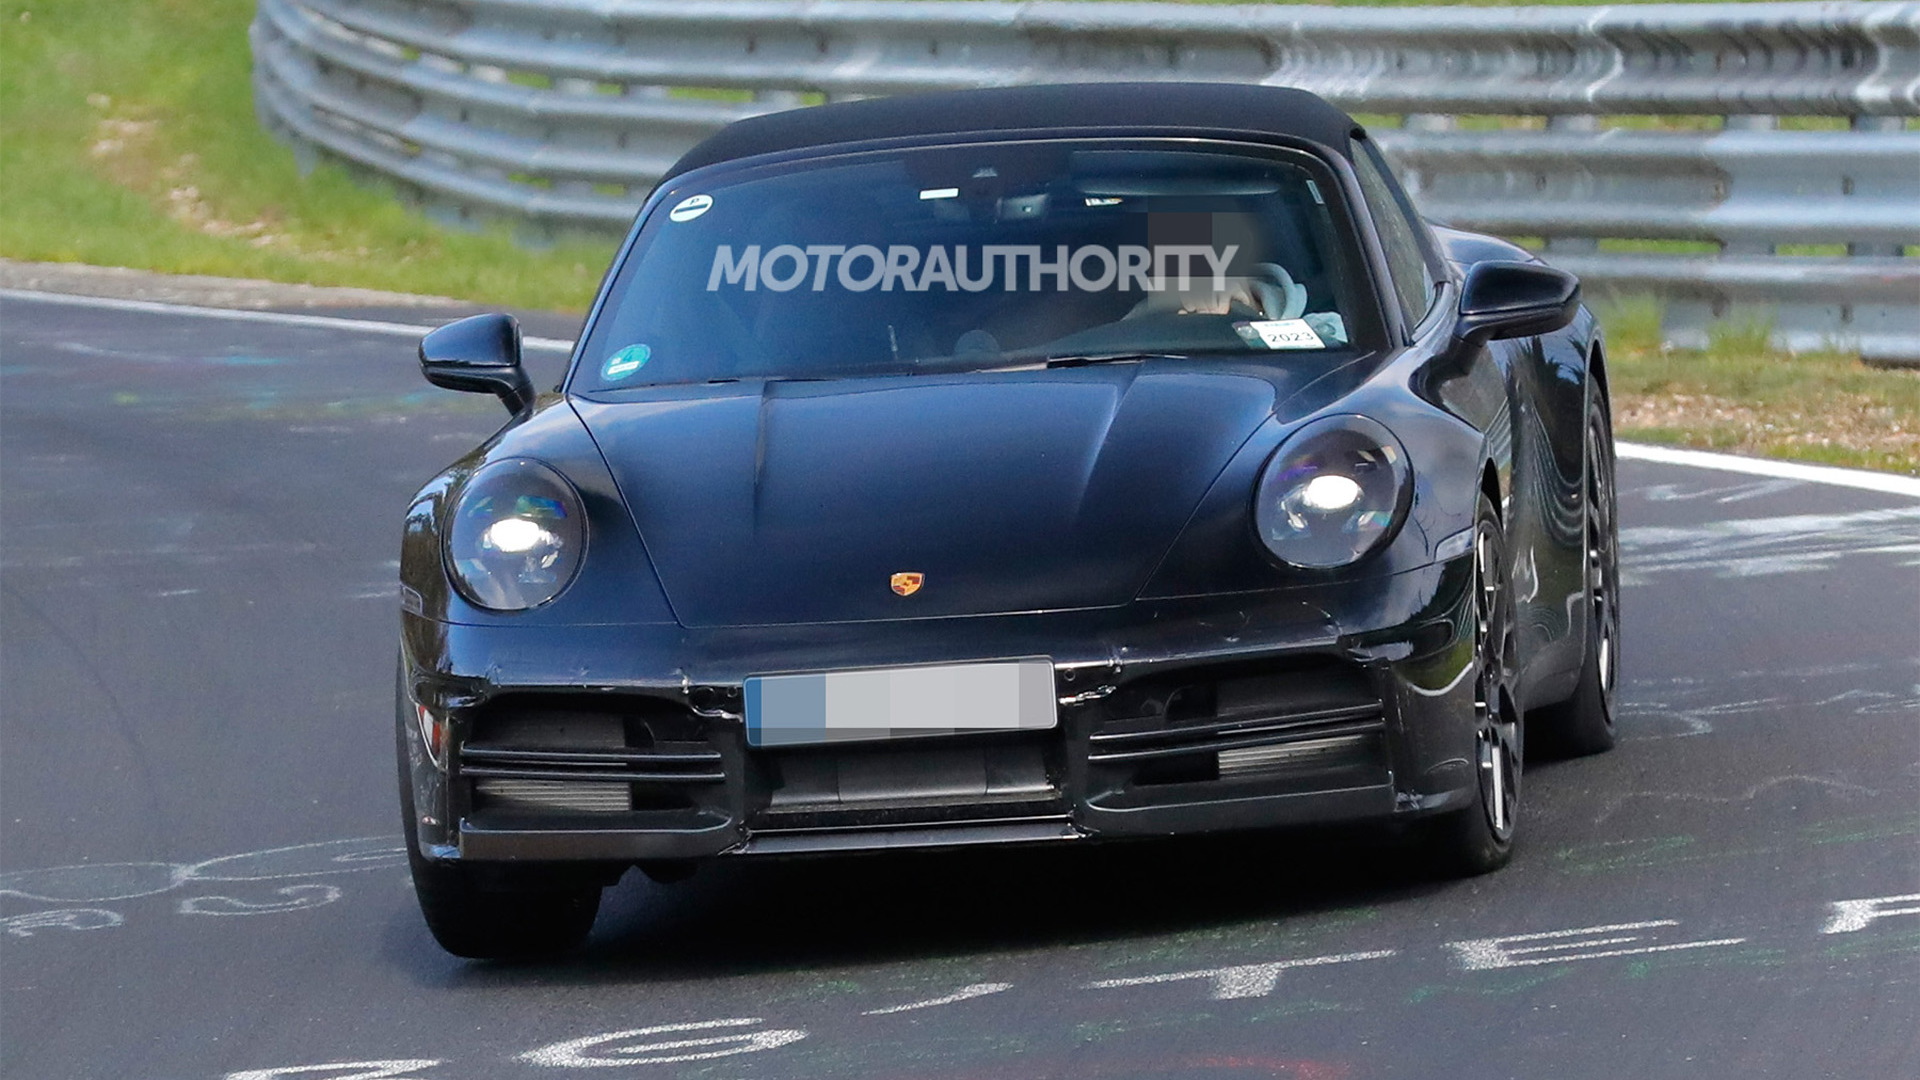 2024 Porsche 911 Targa facelift spy shots - Photo credit: Baldauf